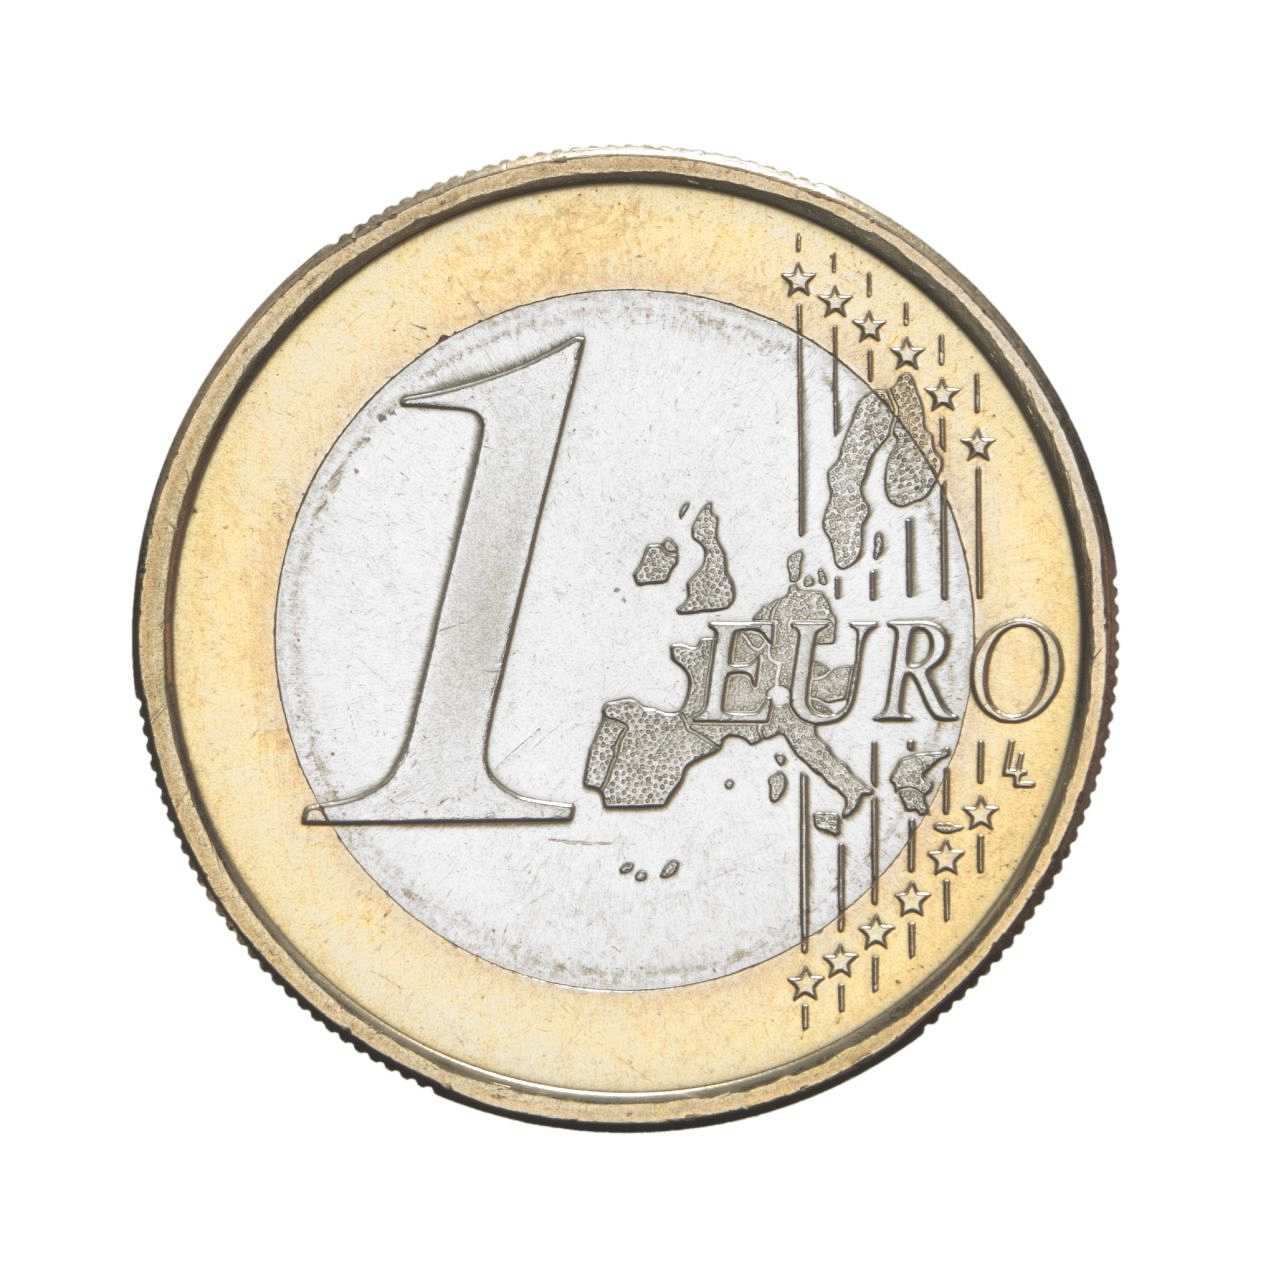 Vorderseite; Bicolor-Münze: Rand gold-, innen silberfarben. In groß '1', in klein 'Euro', rechts von 6 senkrechten Linien mit 12 Sternen durchzogene Europakarte mit den Staaten der Europäischen Union. Stäbchenrand mit glatten Unterbrechungen um die Münze.